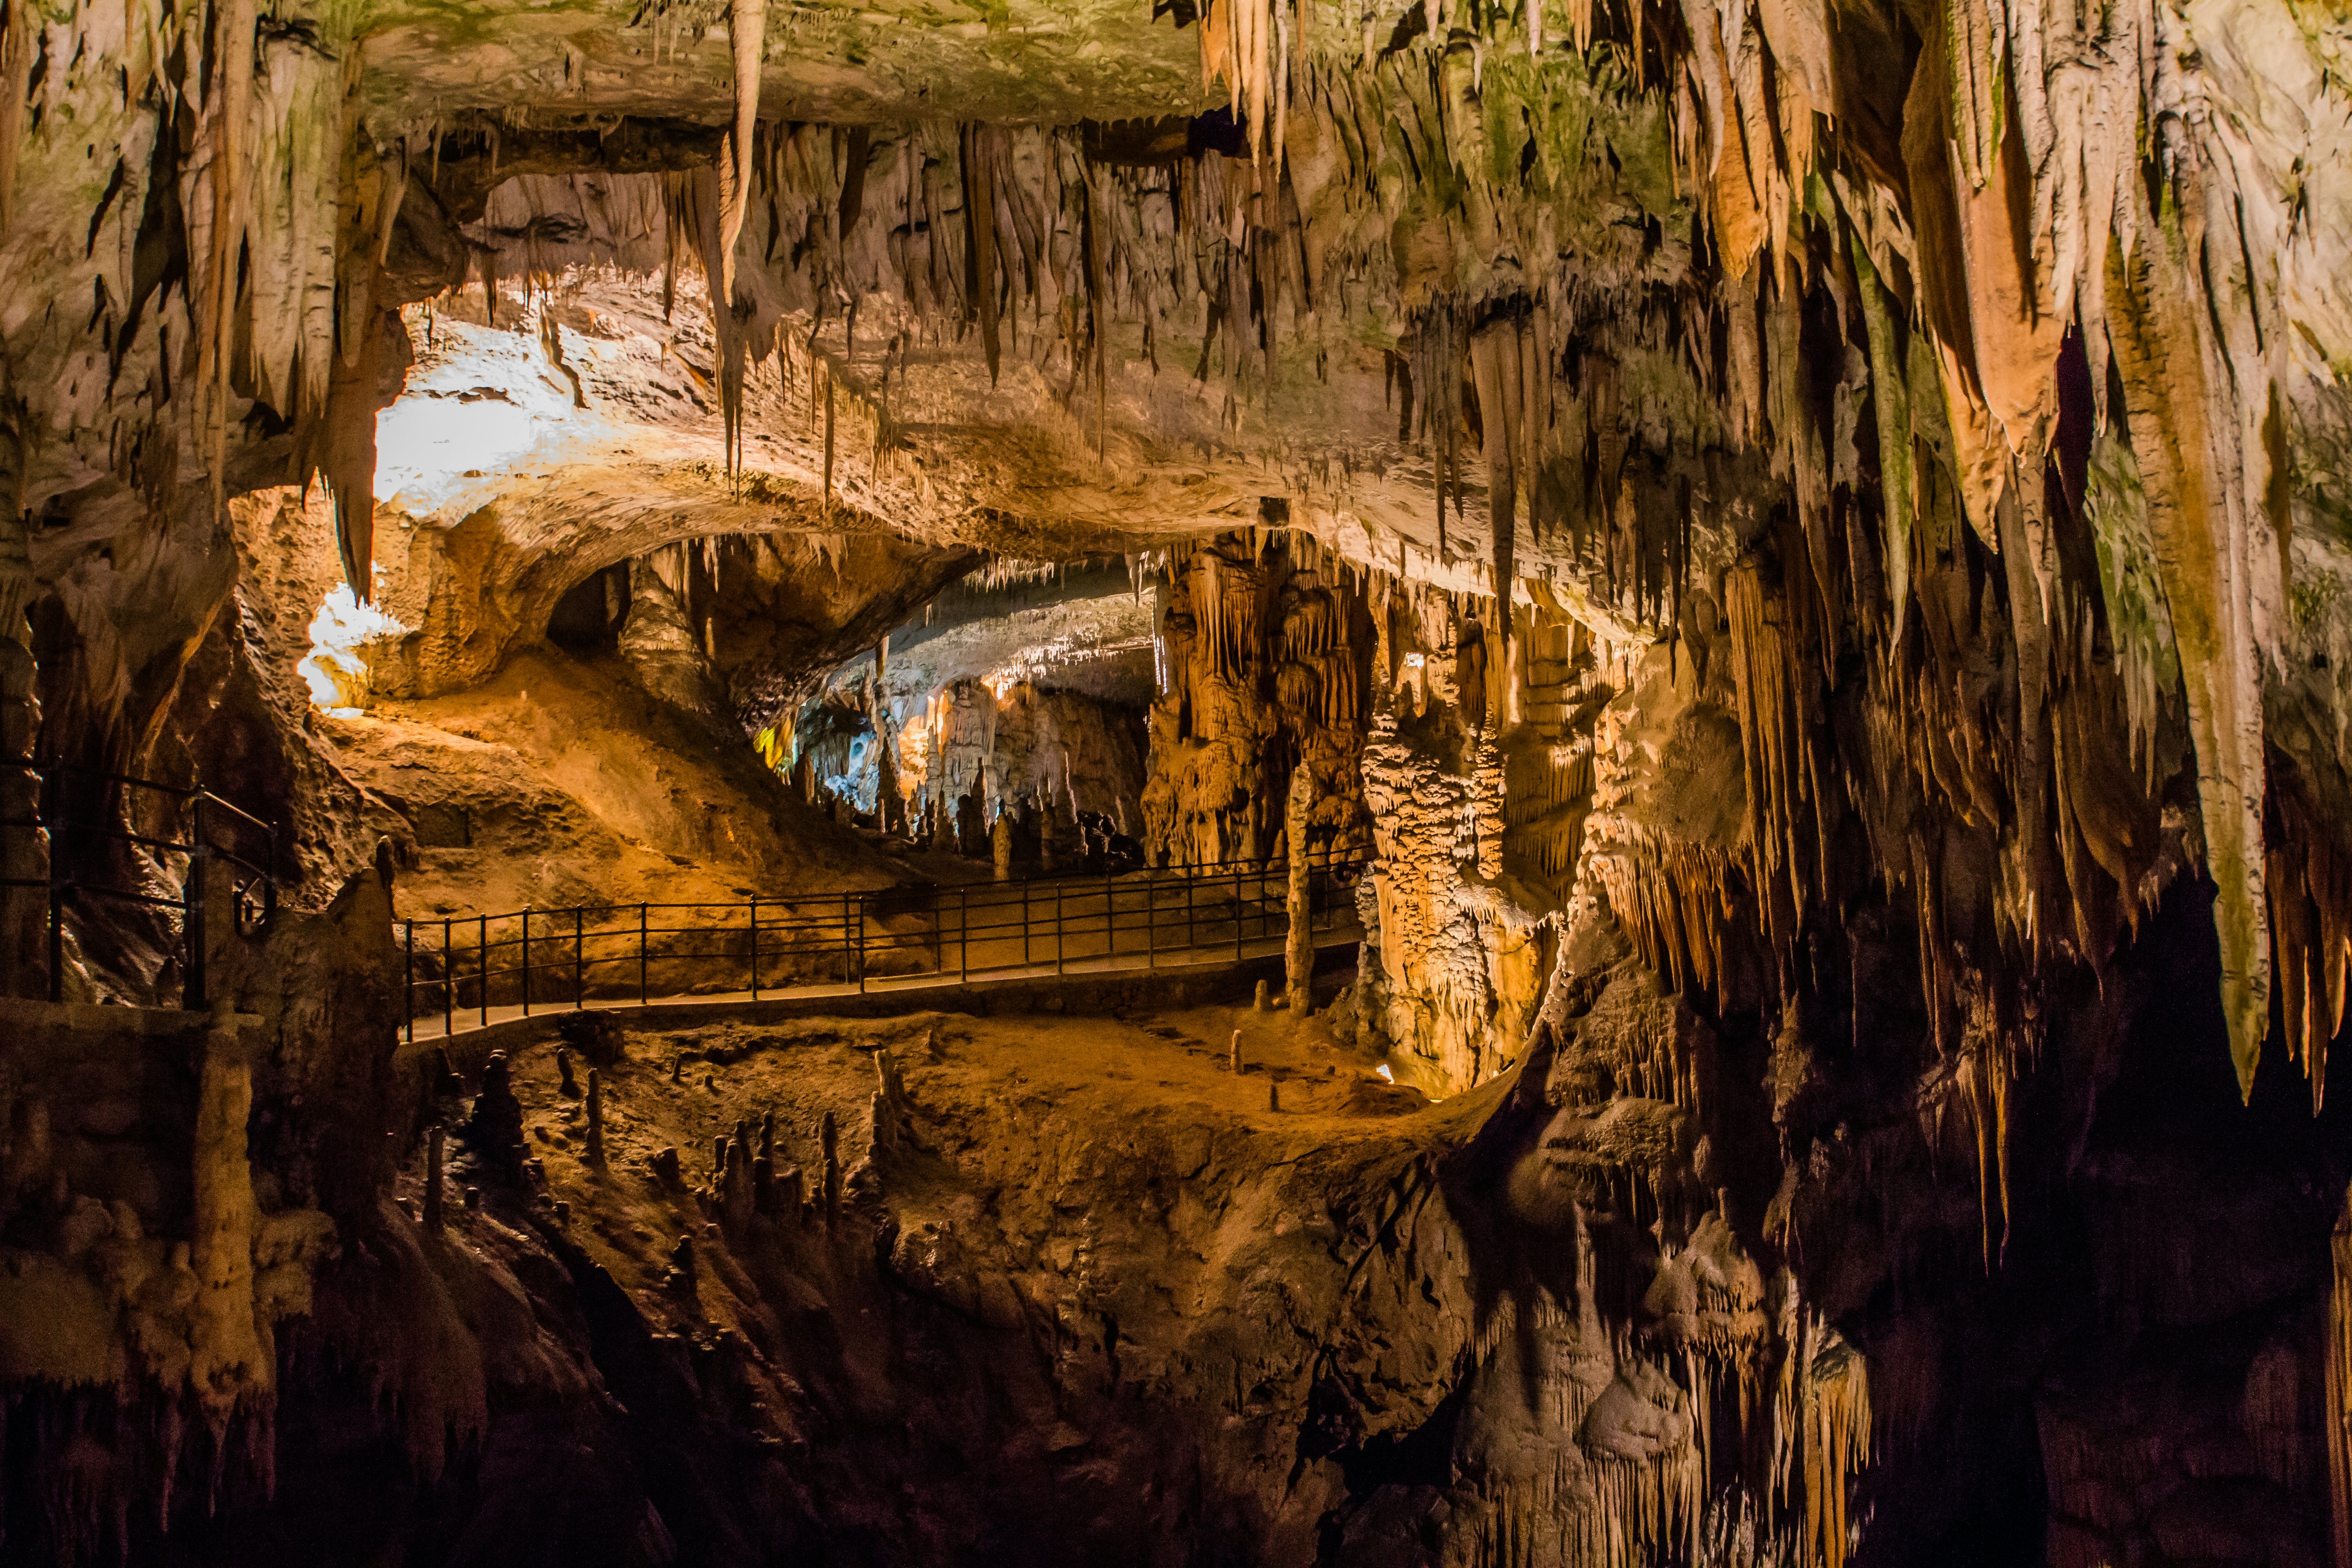 Cave v. Пещера Постойна яма. Постойна Словения. Постойнские пещеры Словения. Пещера Постойна яма Словения.